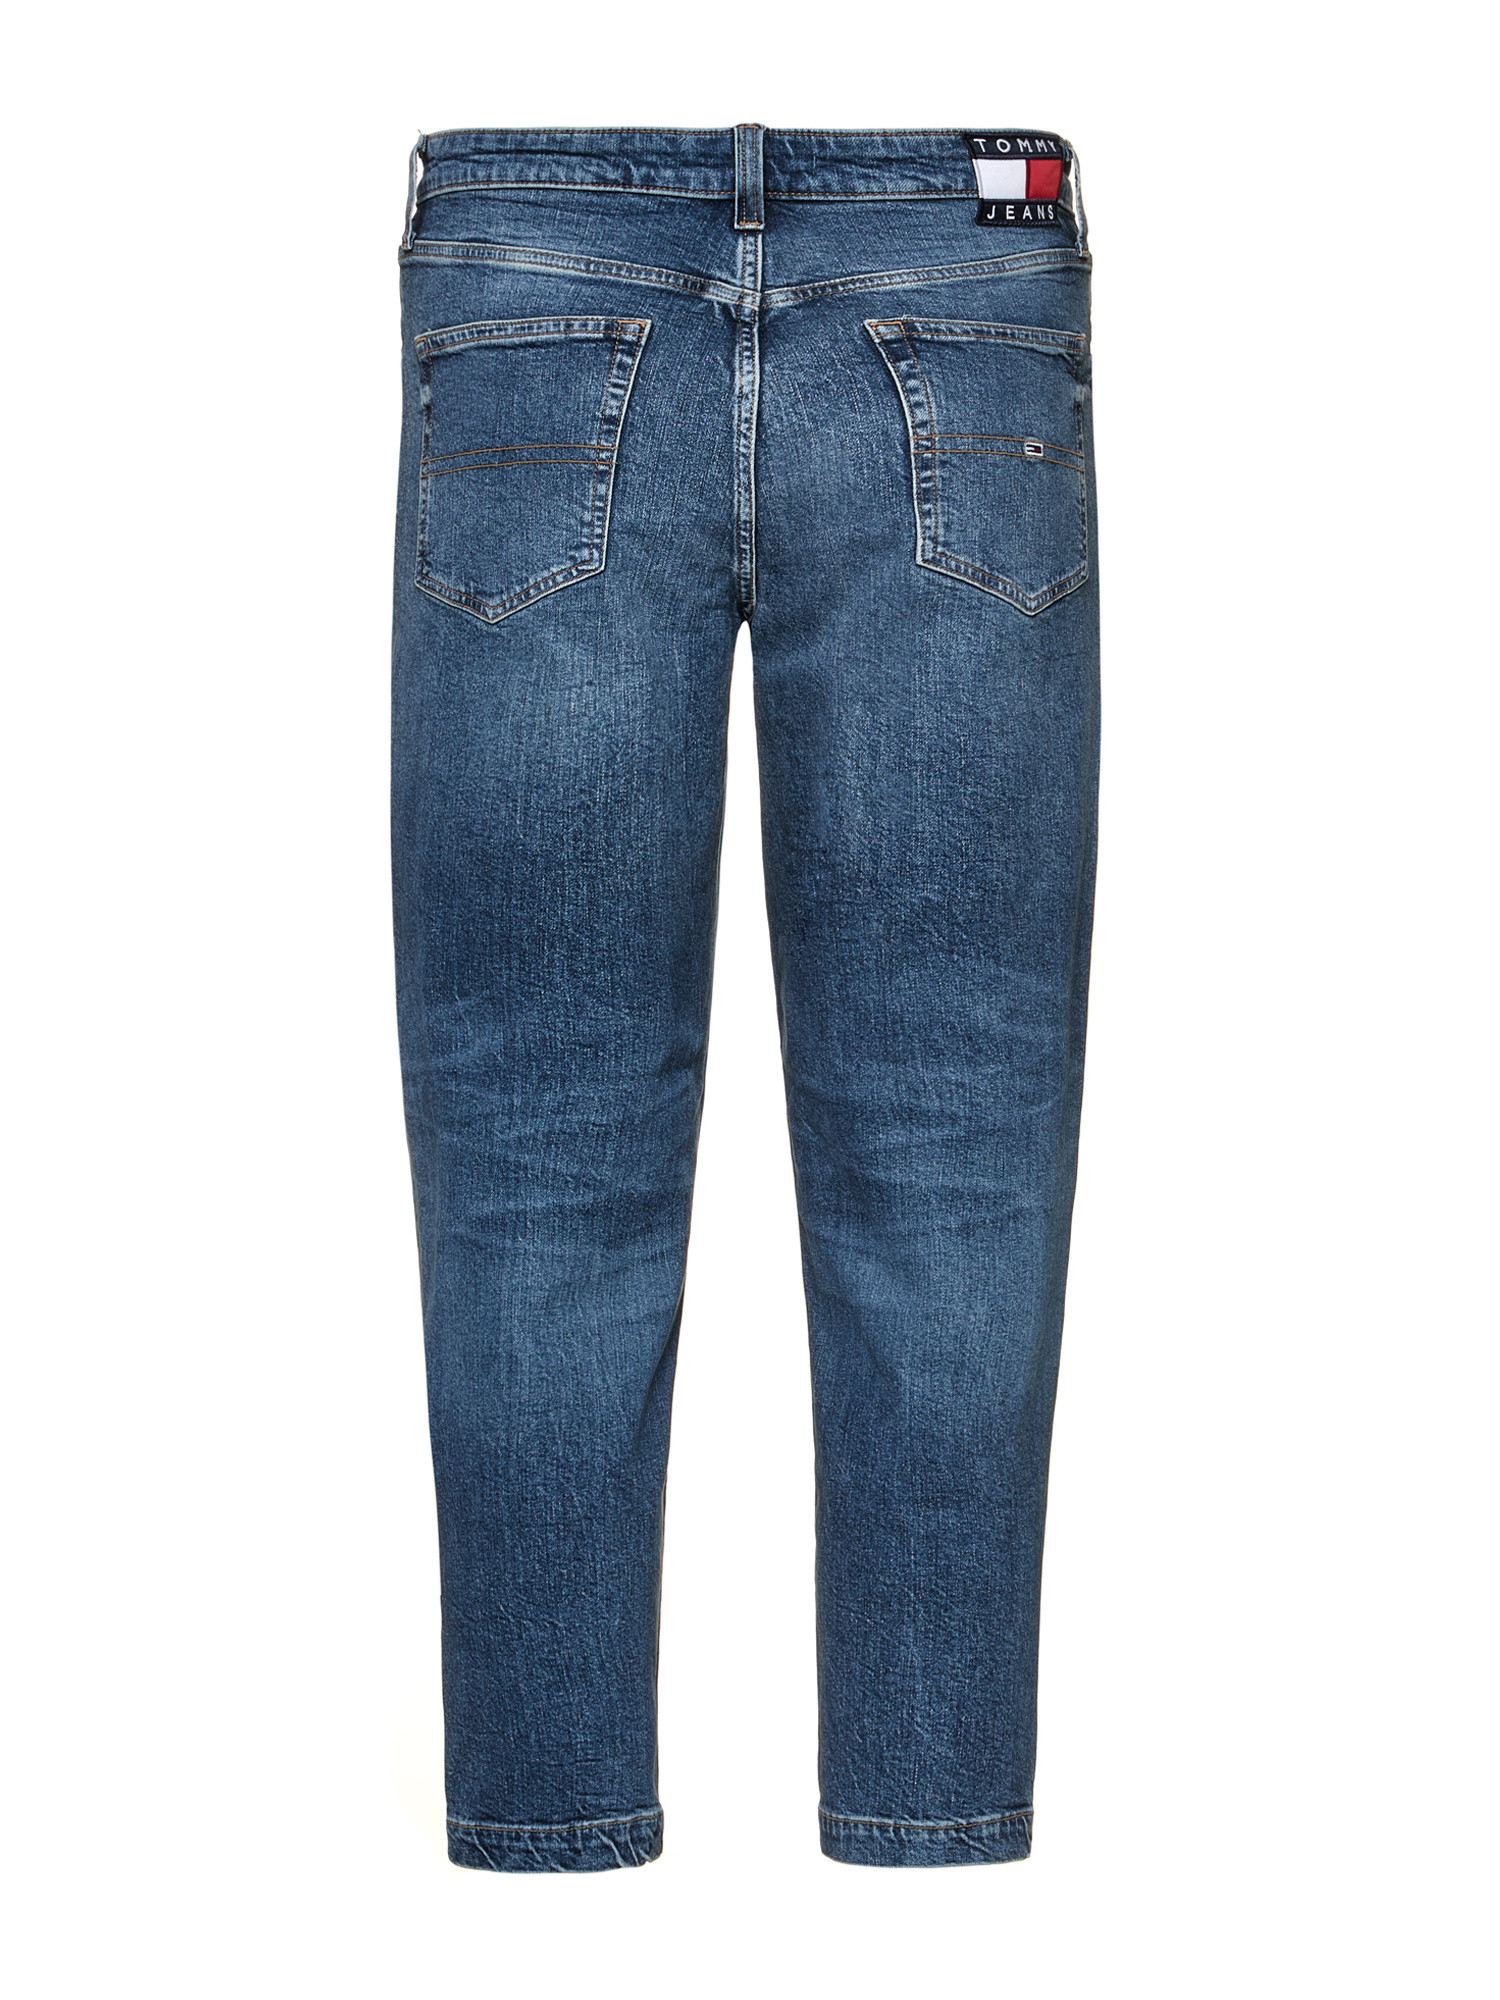 Tommy Jeans -Five pocket jeans, Denim, large image number 1